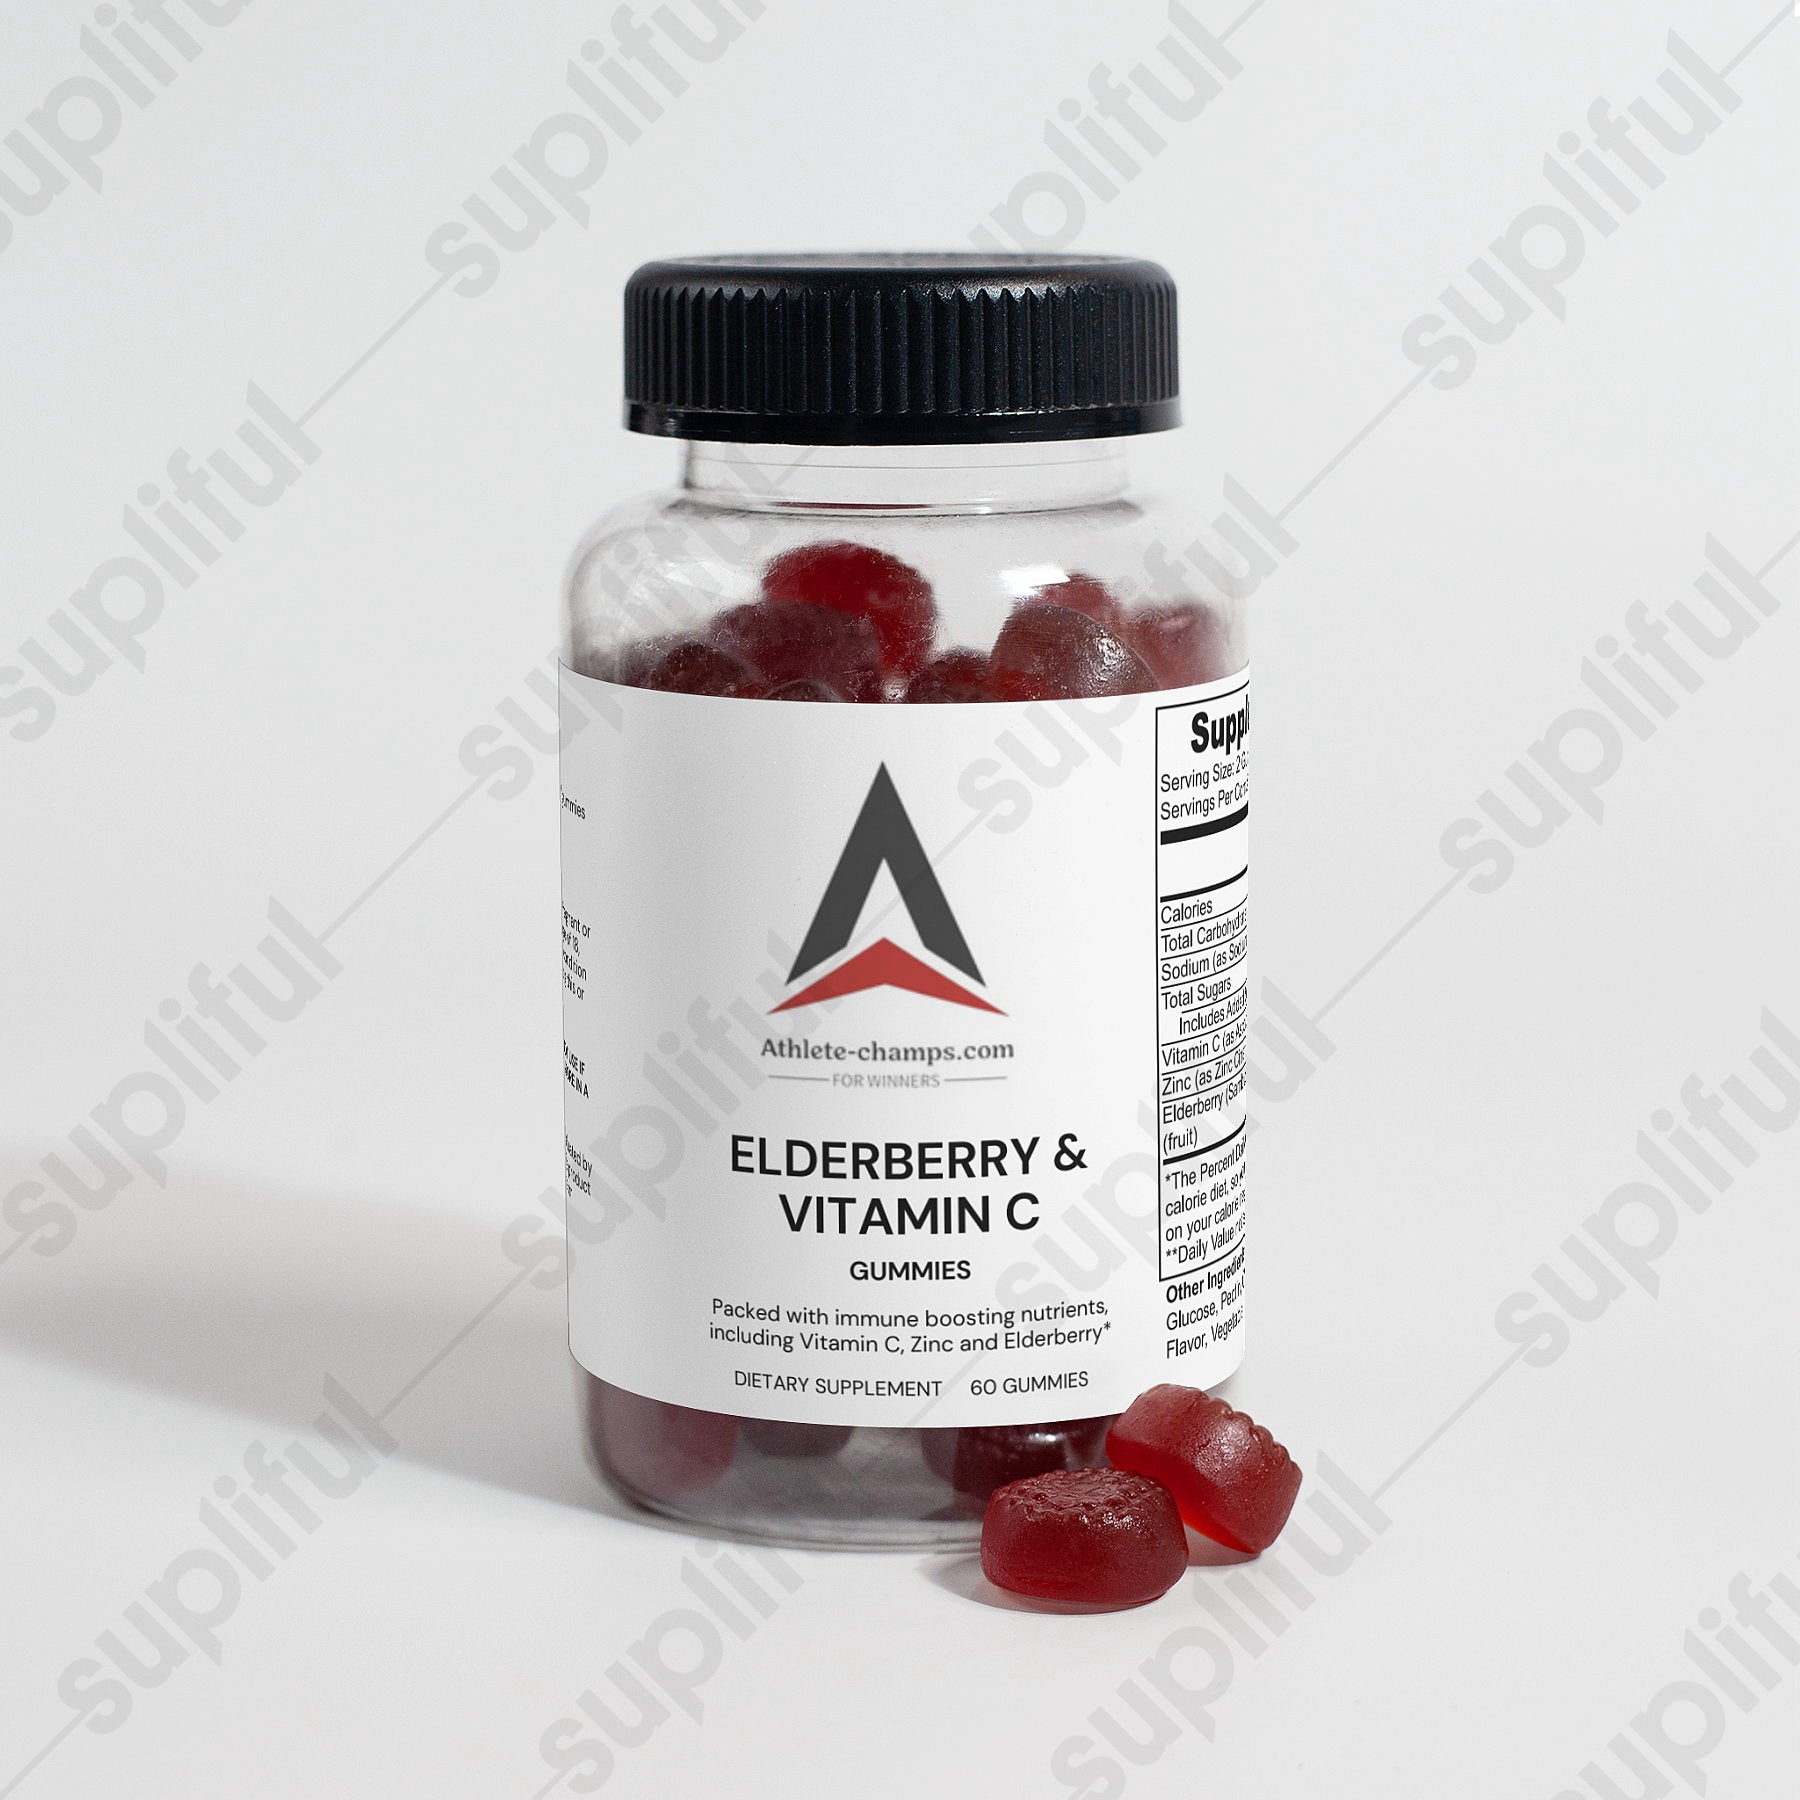 Vitamin C & Elderberry Gummies Supplements Obtain Immune Boost Mineral